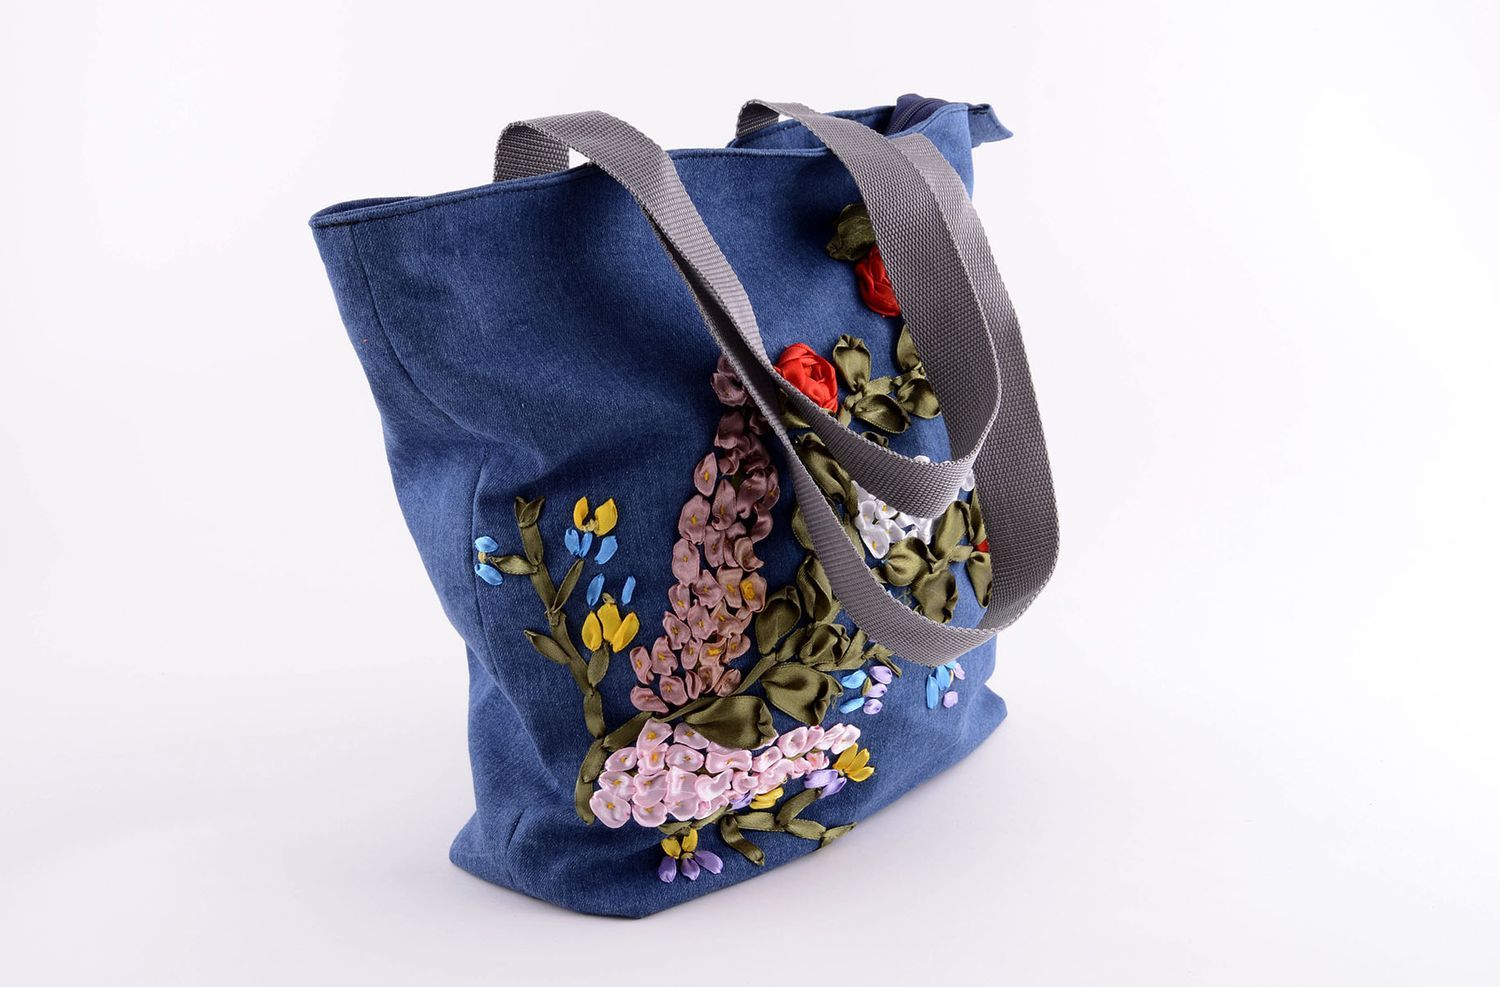 Сумка ручной работы синяя сумка вышитая лентами атласными удобная сумка на плечо фото 2